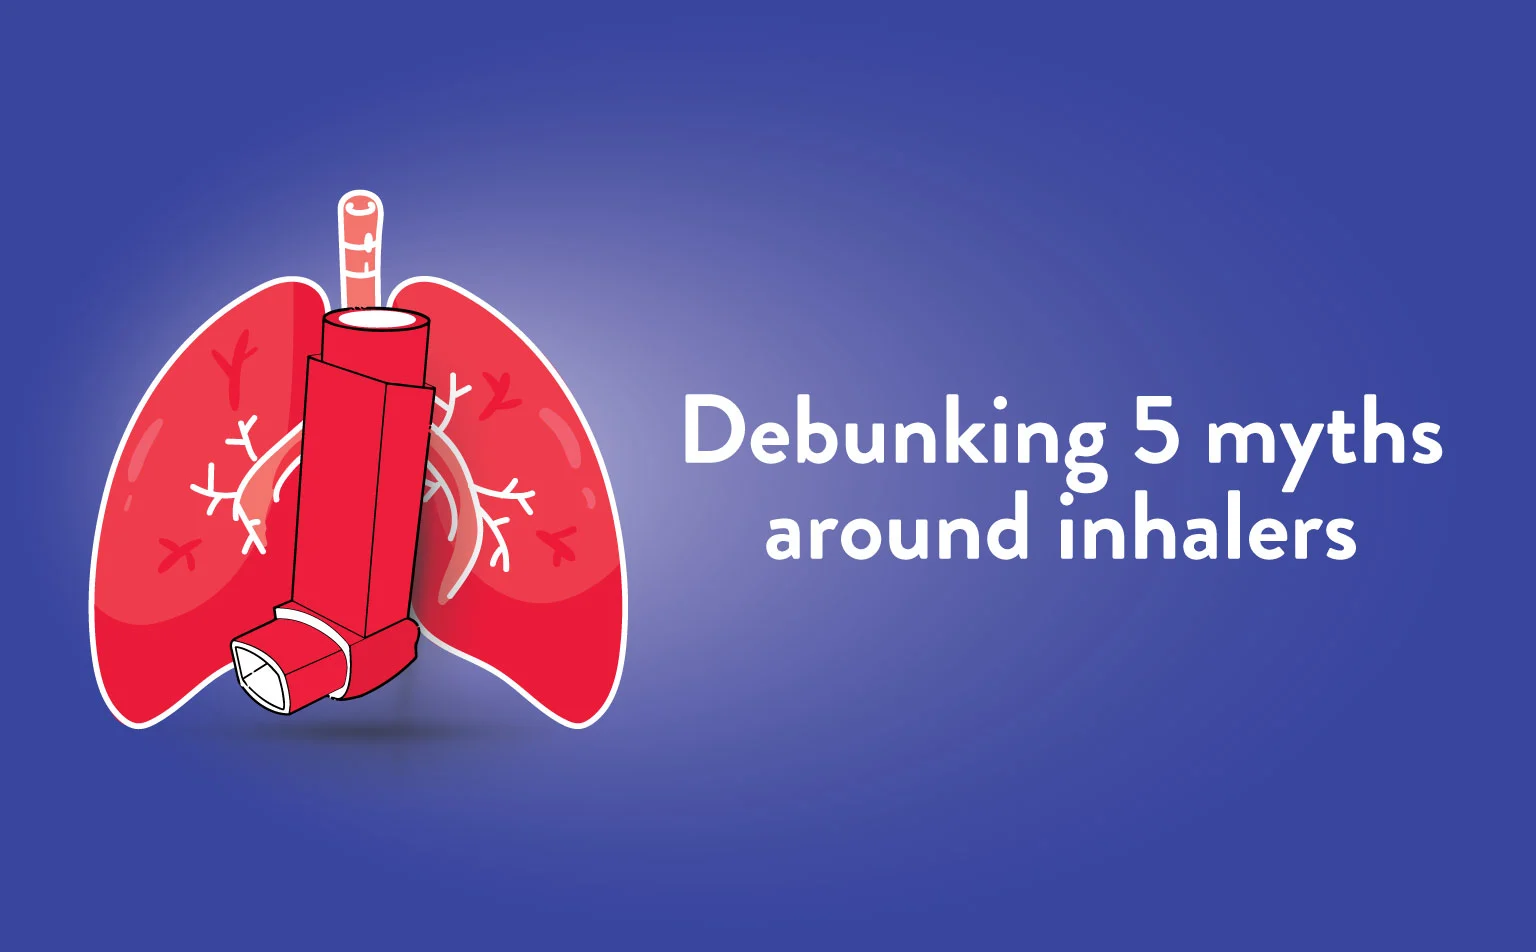 Debunking 5 myths around inhalers